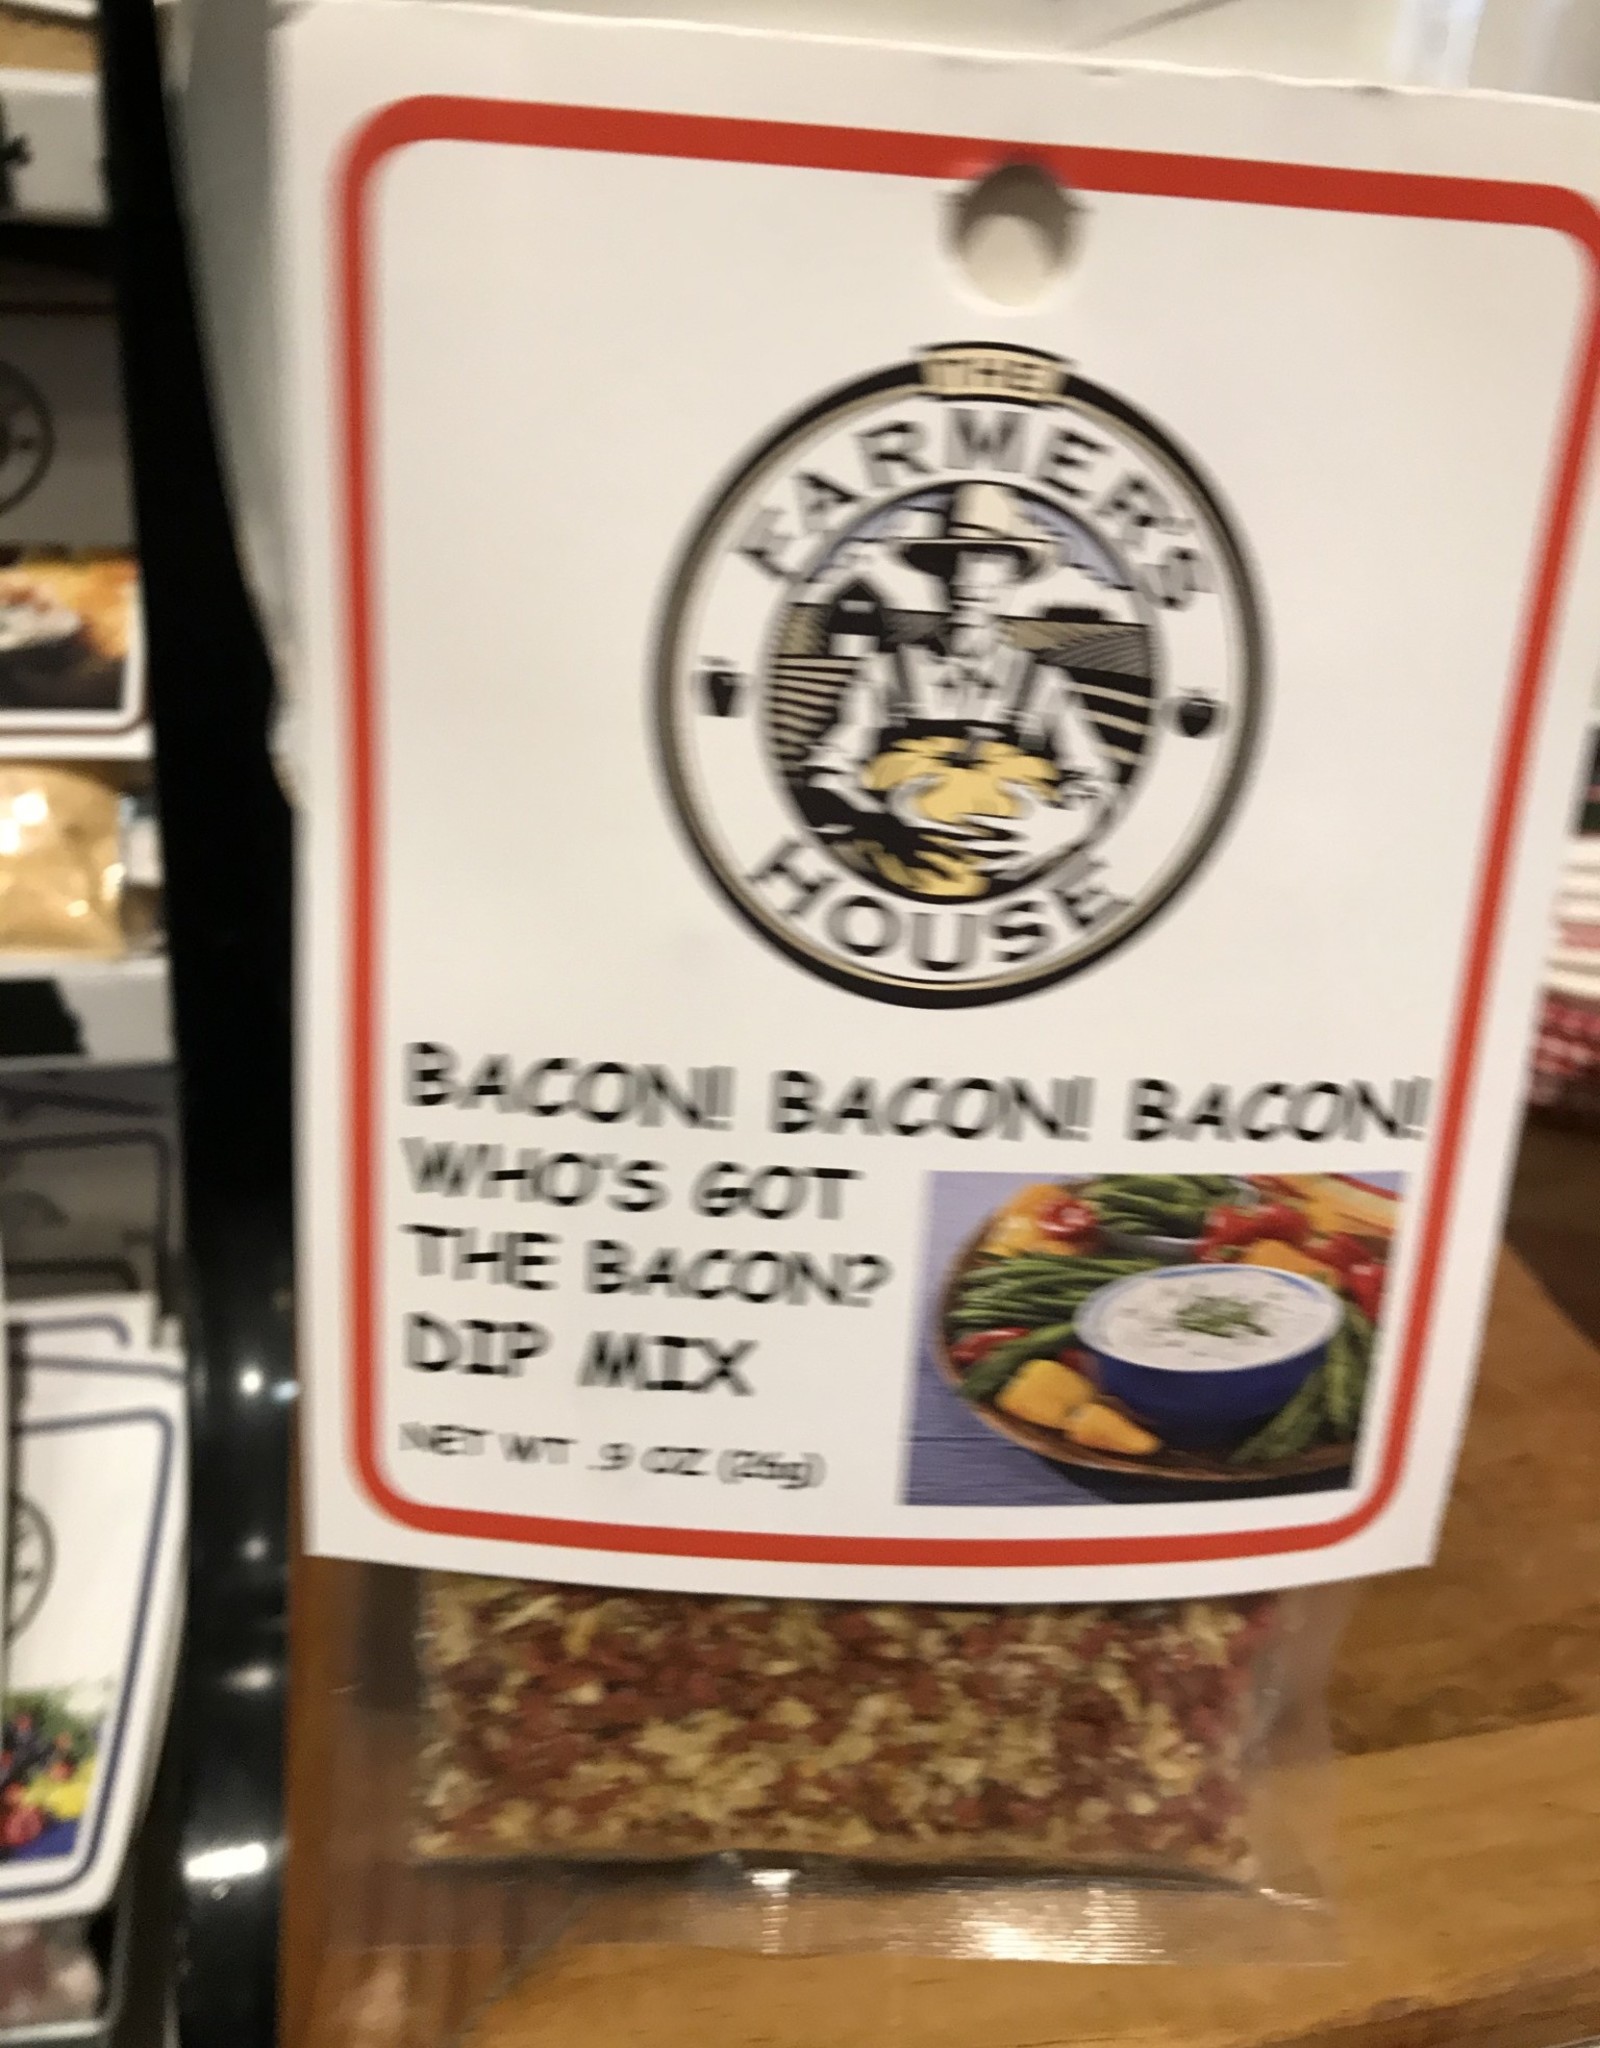 TFH Dip Mix: Who's Got Bacon Bacon